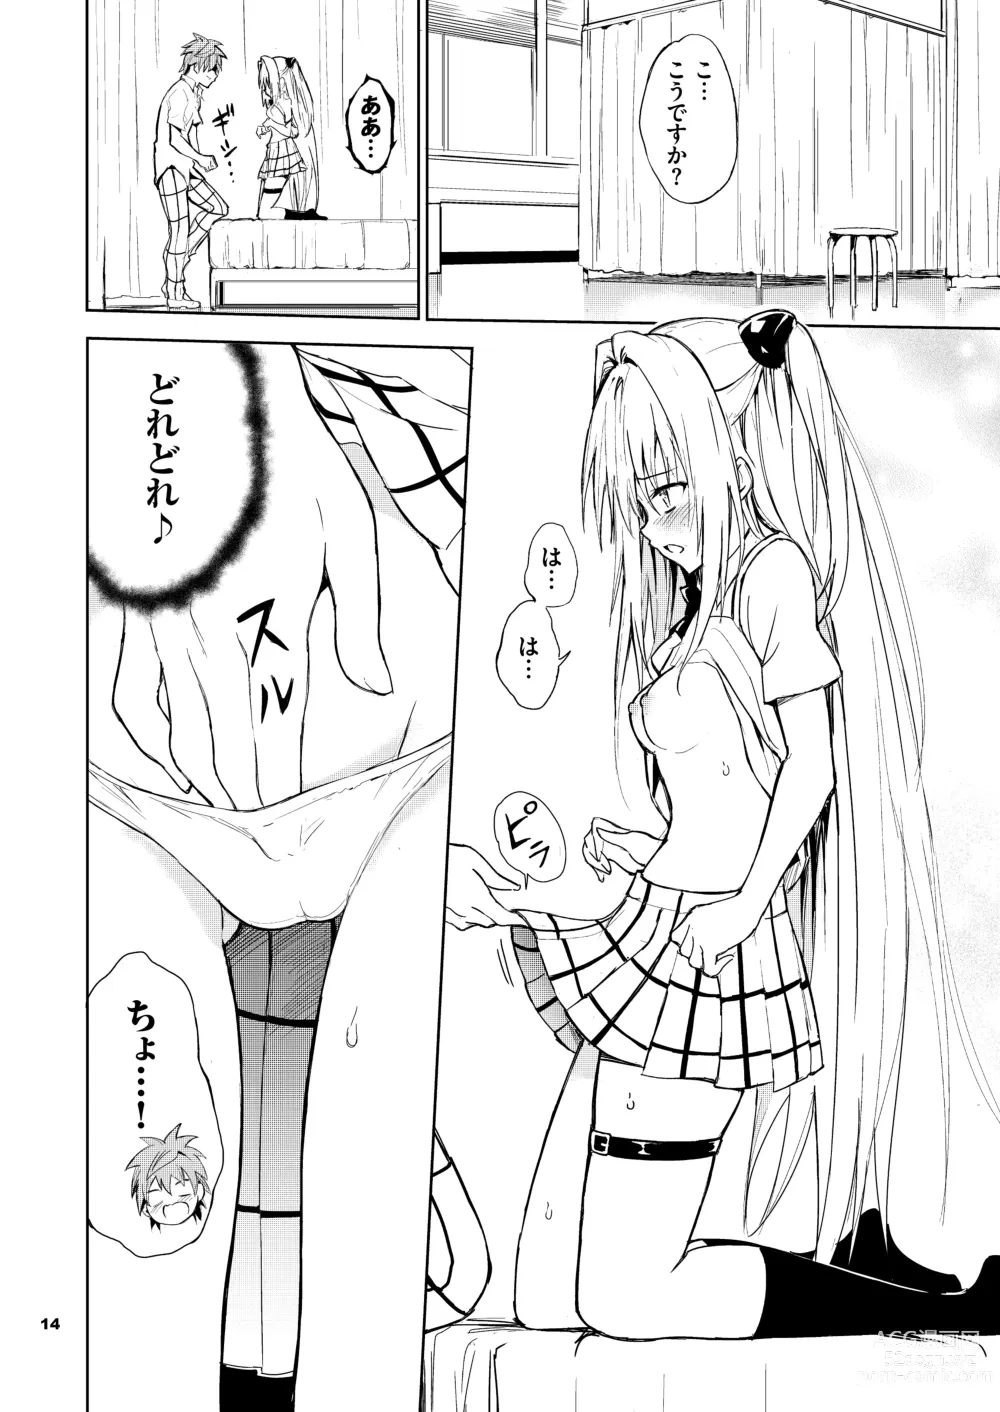 Page 14 of doujinshi Ecchii no wa Kirai desu ka?